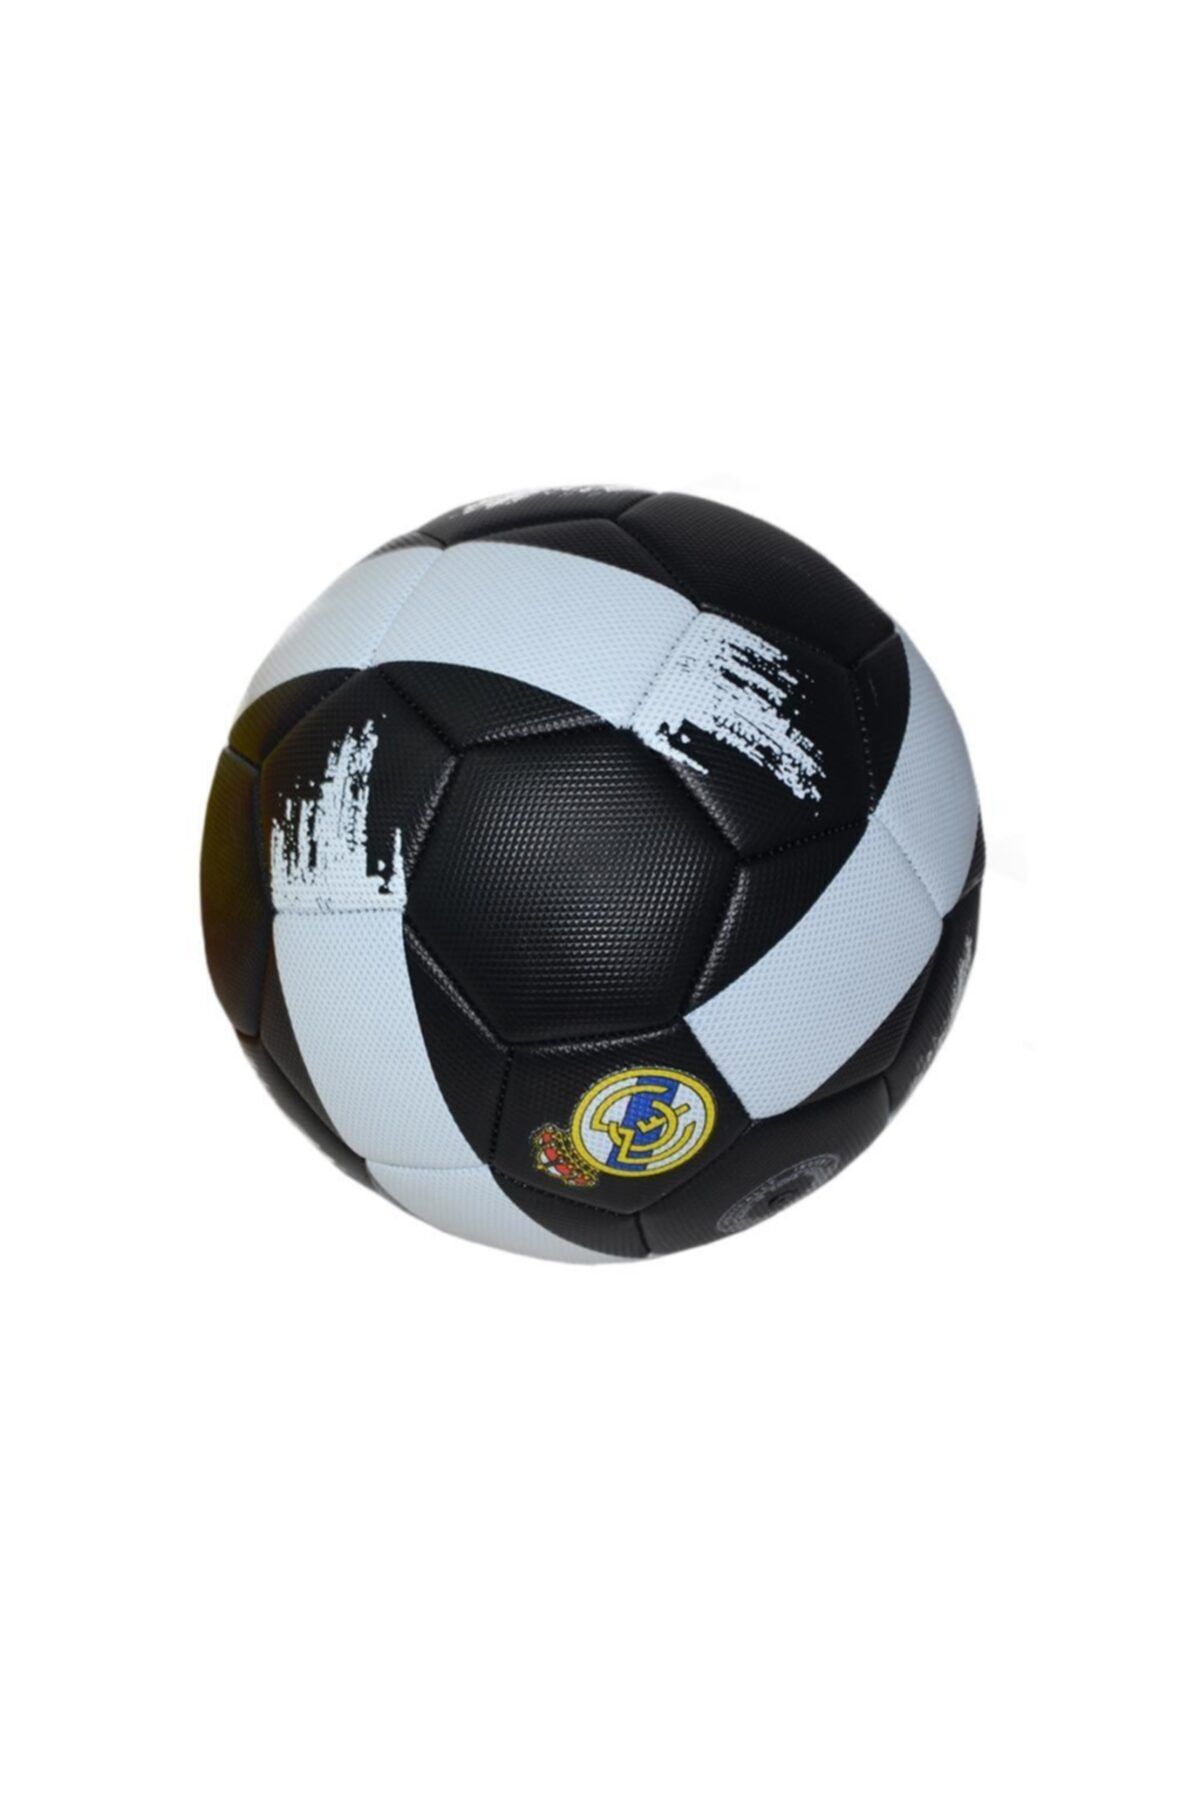 can oyuncak Cn-601 Futbol Topu